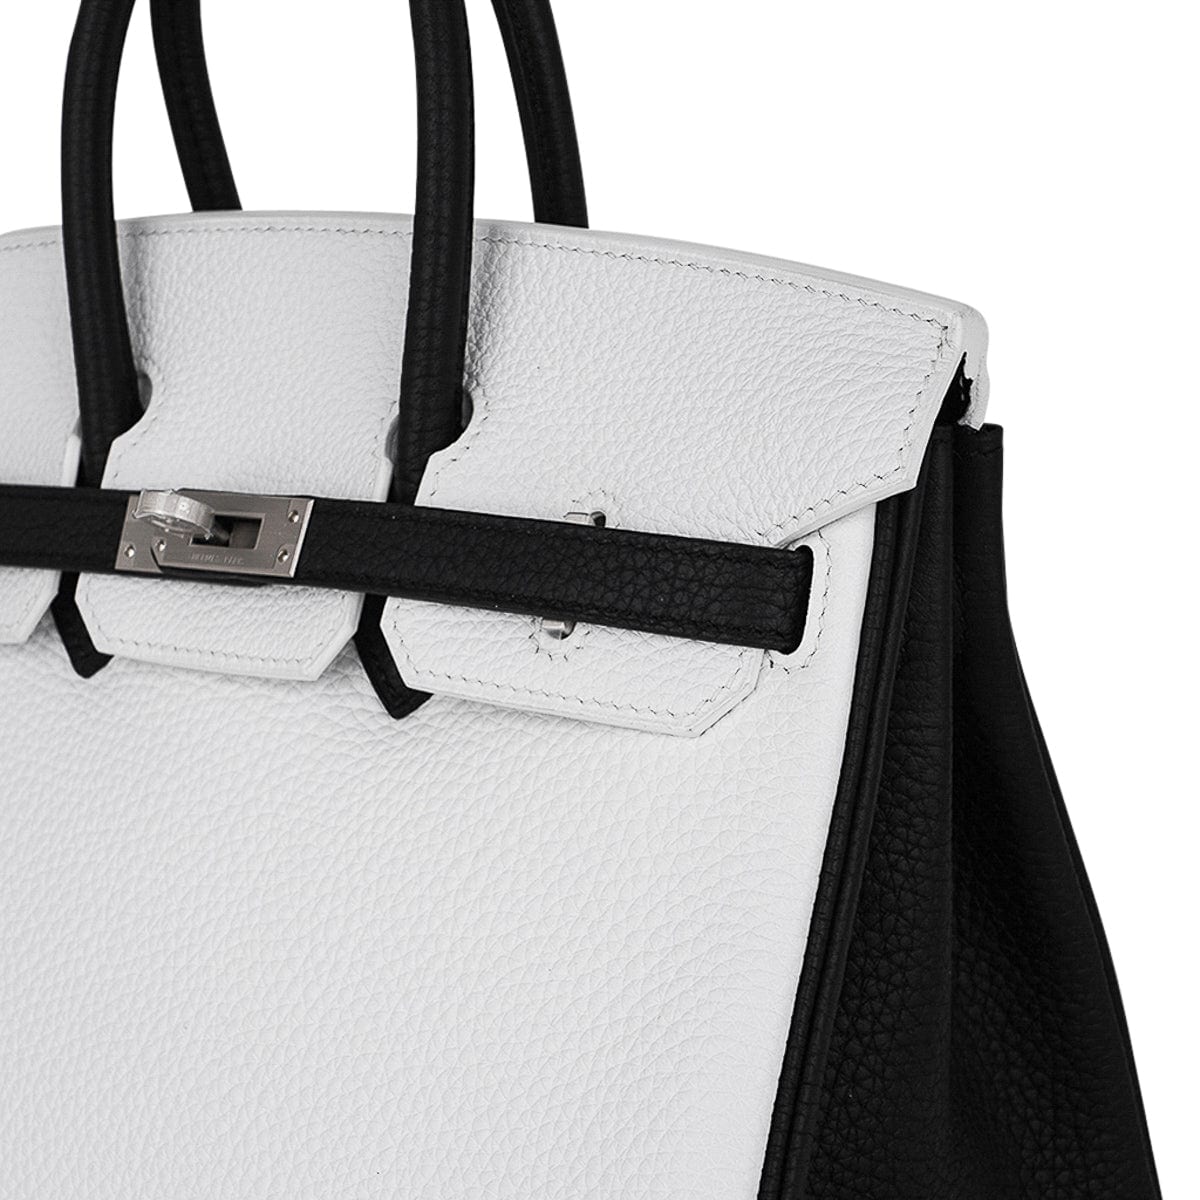 Hermes Birkin 25 Handbag Sienne Clemence with Palladium Hardware